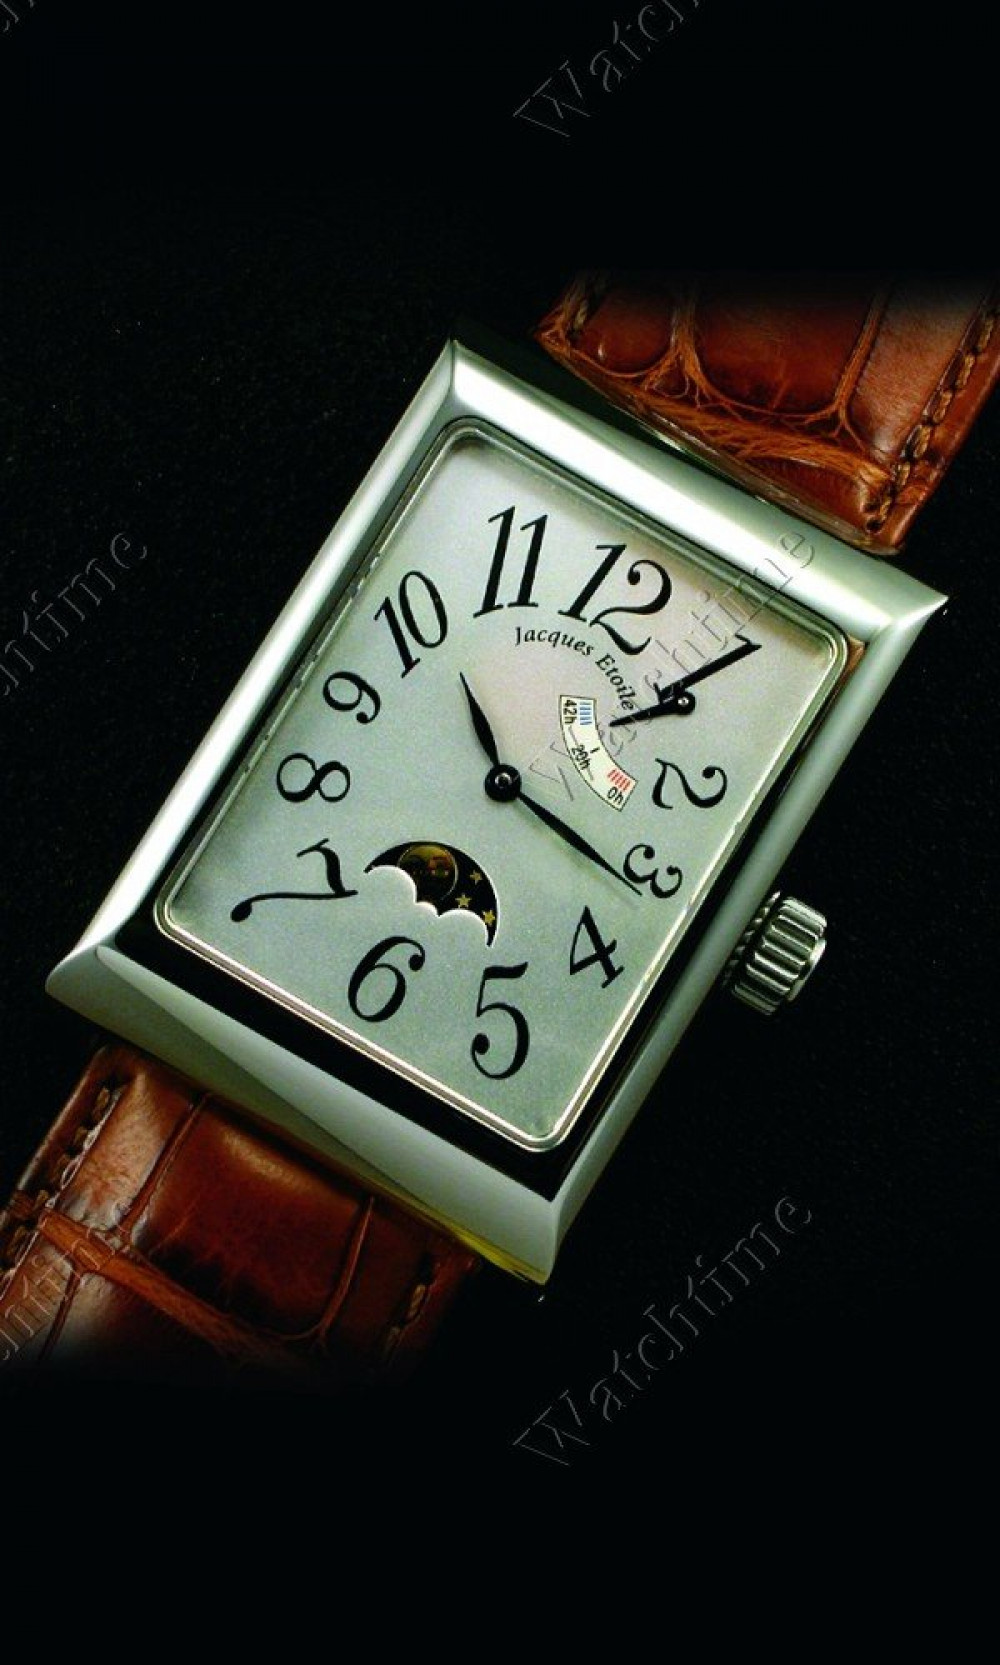 Zegarek firmy Jacques Etoile, model Estes Parc Lunarium